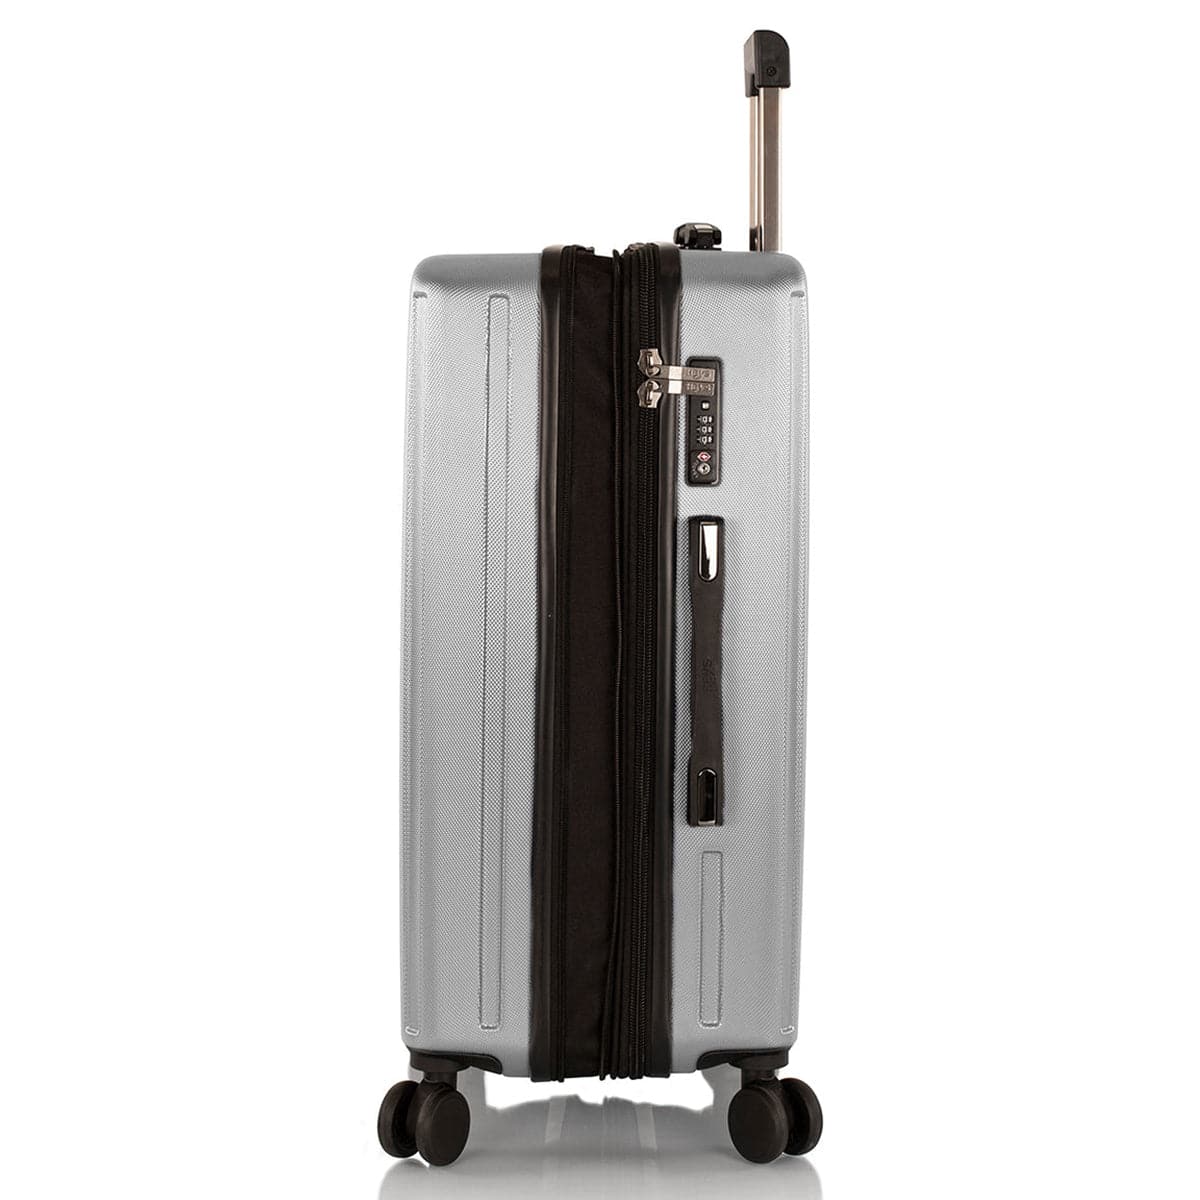 Heys Spinlite 3 Piece Spinner Luggage Set